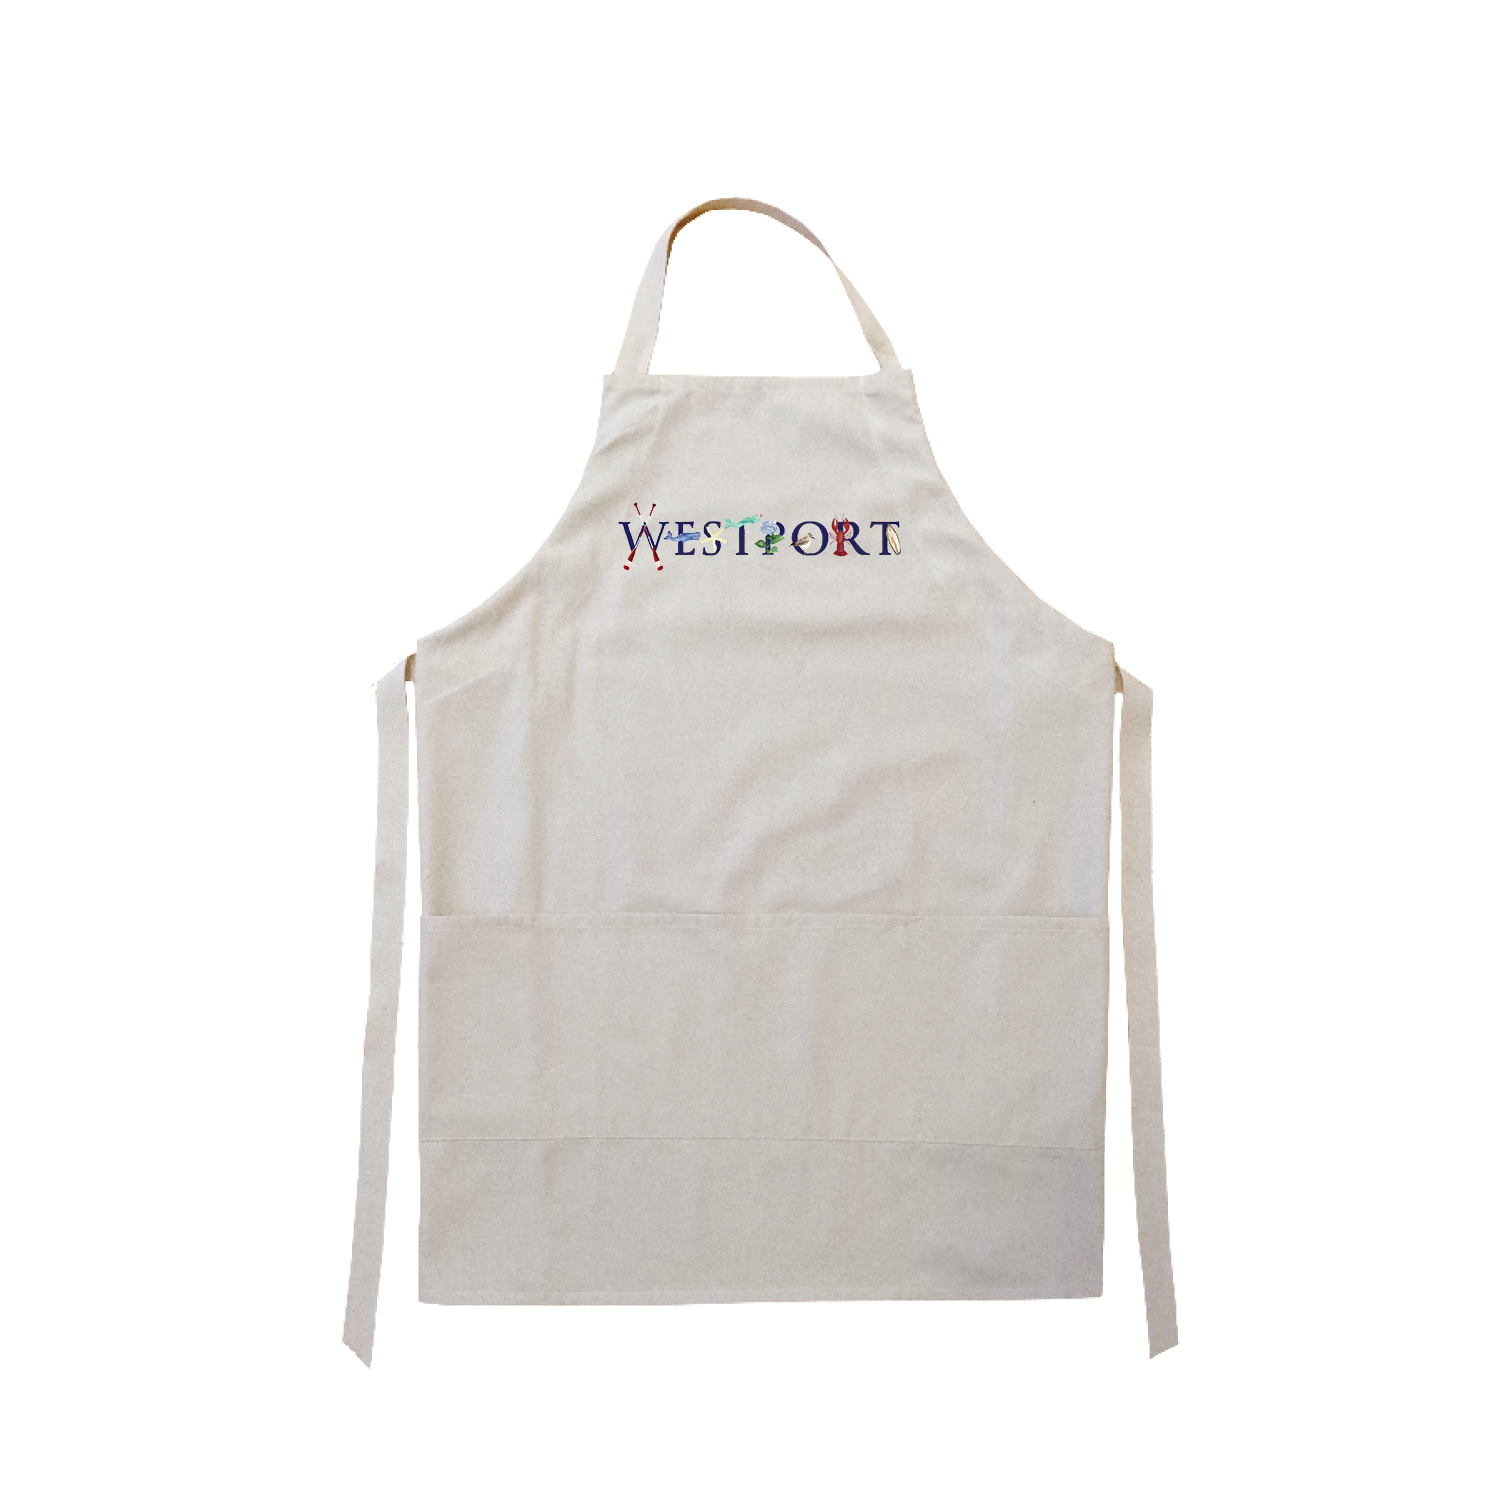 Westport apron